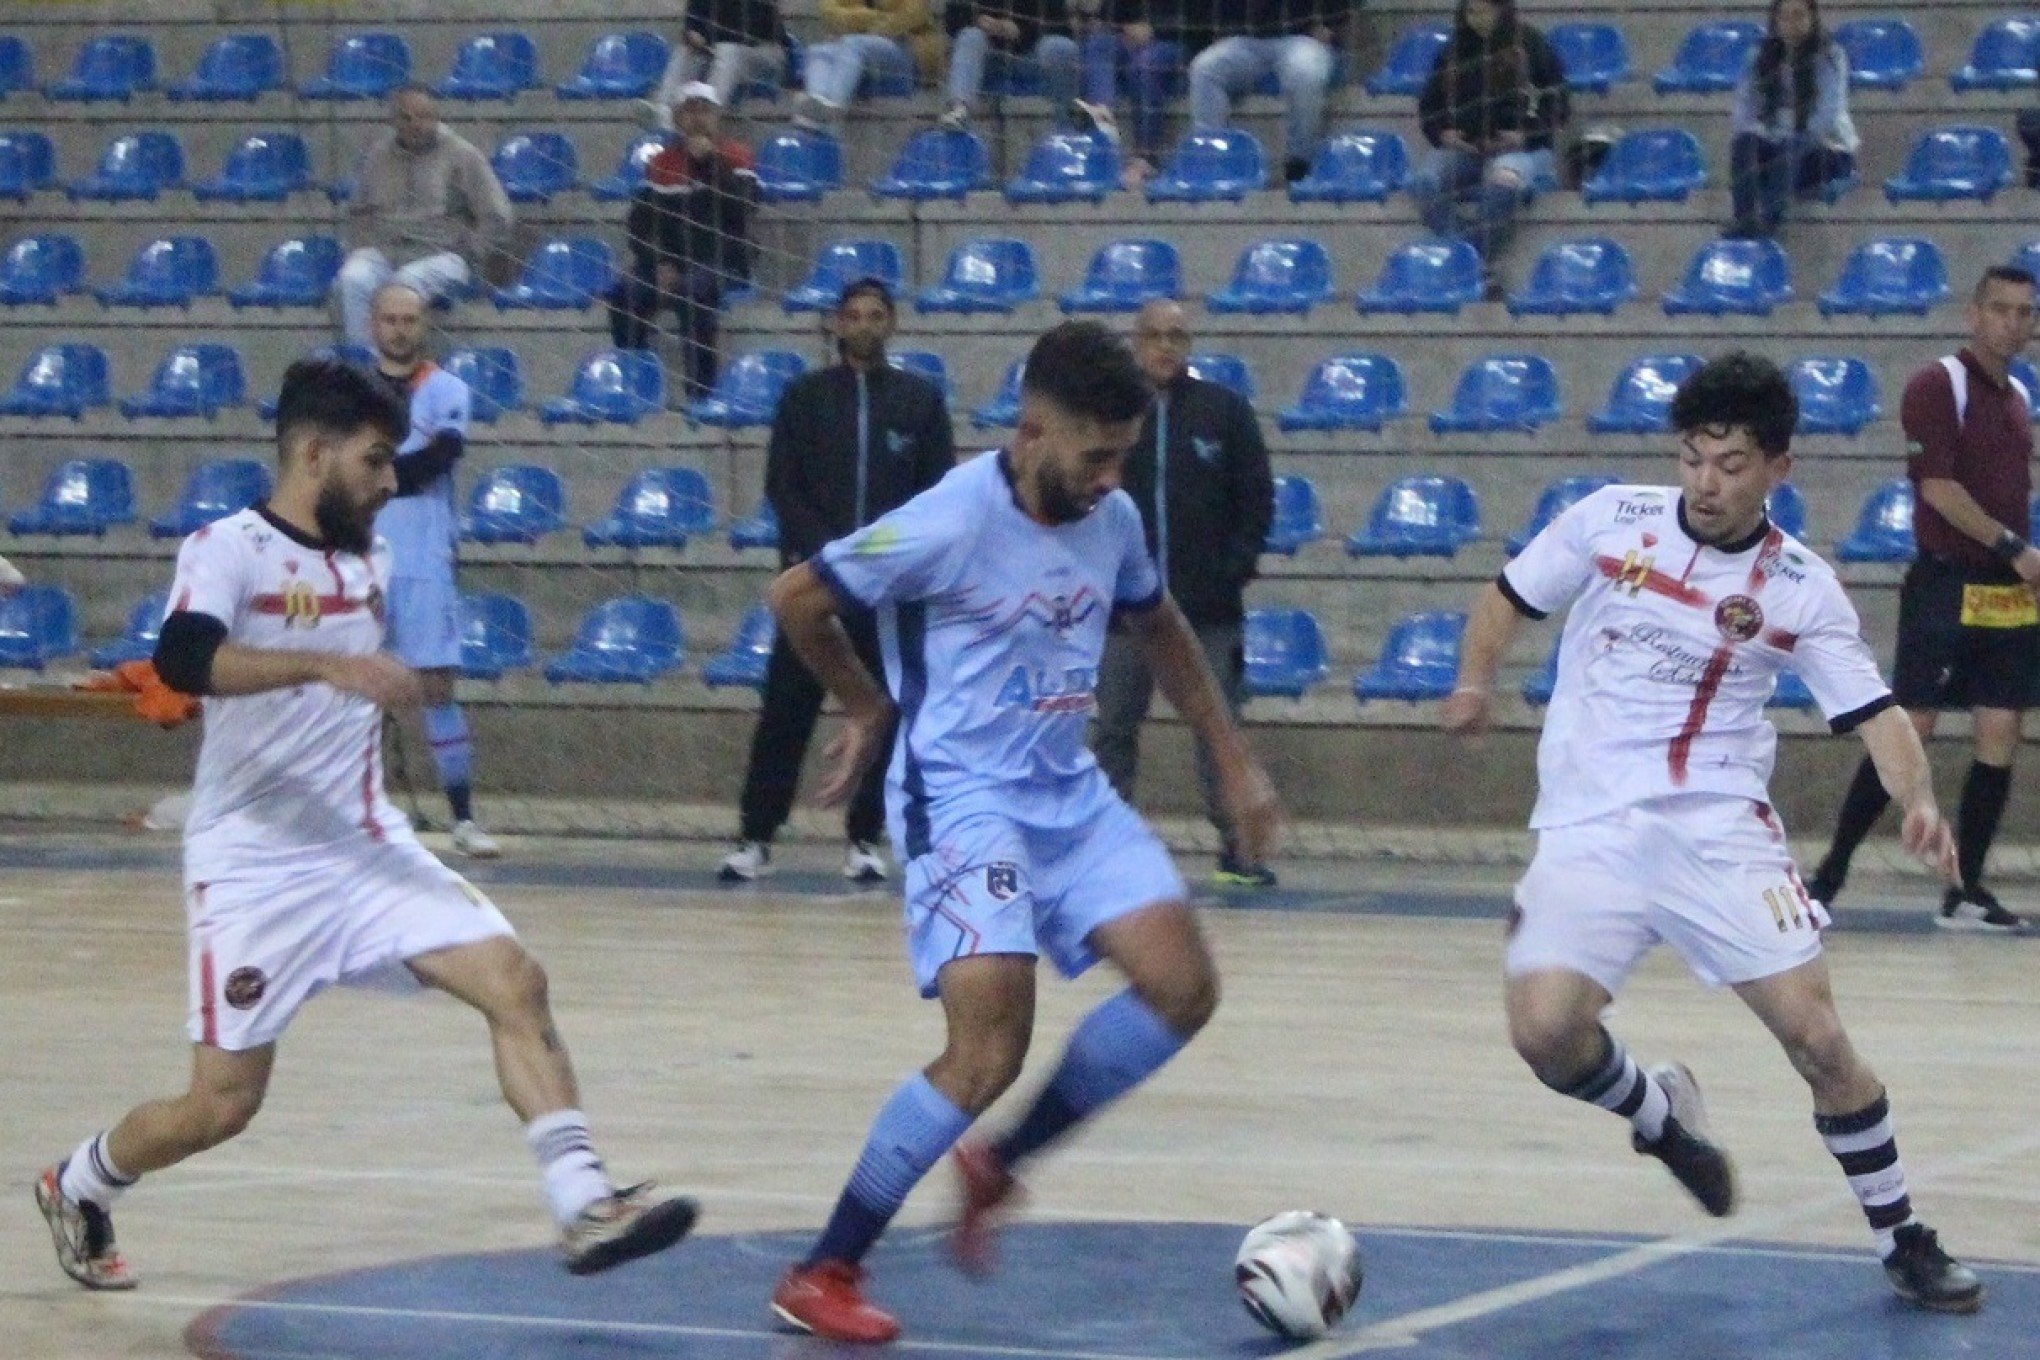 Série Bronze de Futsal define finalistas nesta sexta-feira em Campo Bom